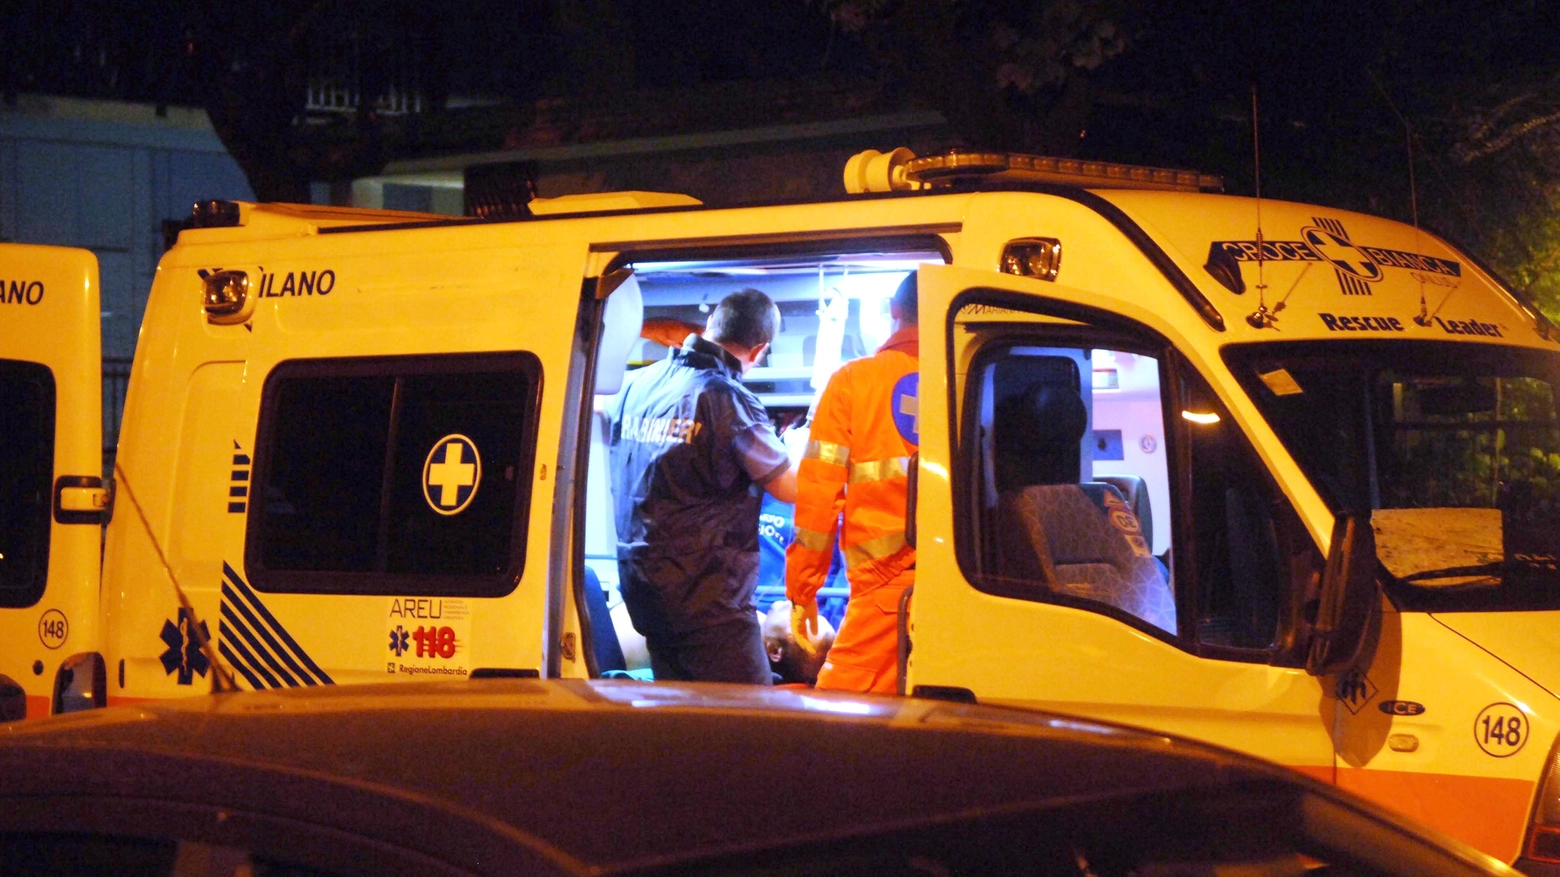 La giovane è stata soccorsa in ambulanza, indagano i carabinieri (Newpress)